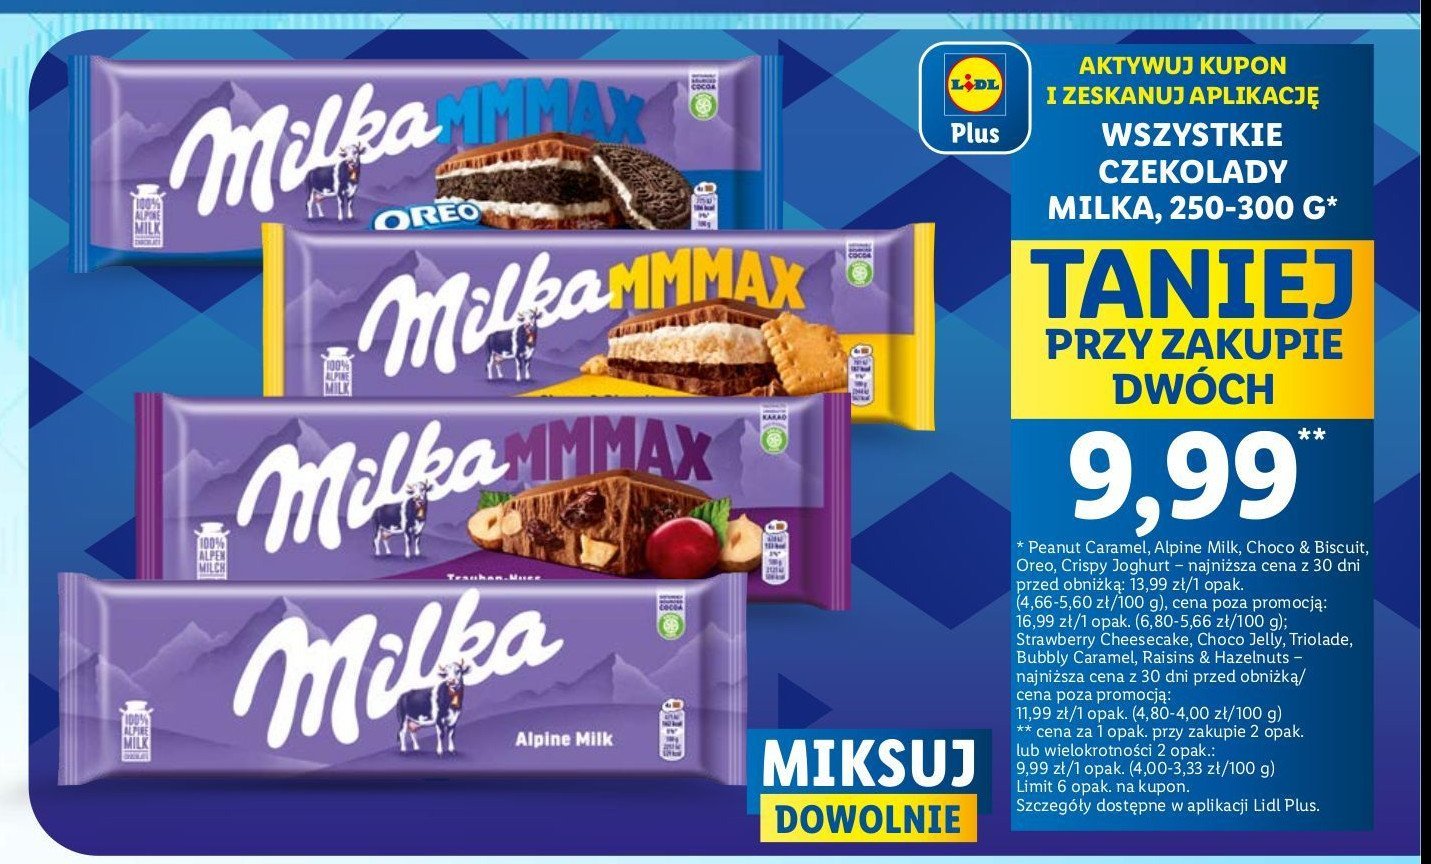 Czekolada raisins & hazelnuts Milka mmmax promocja